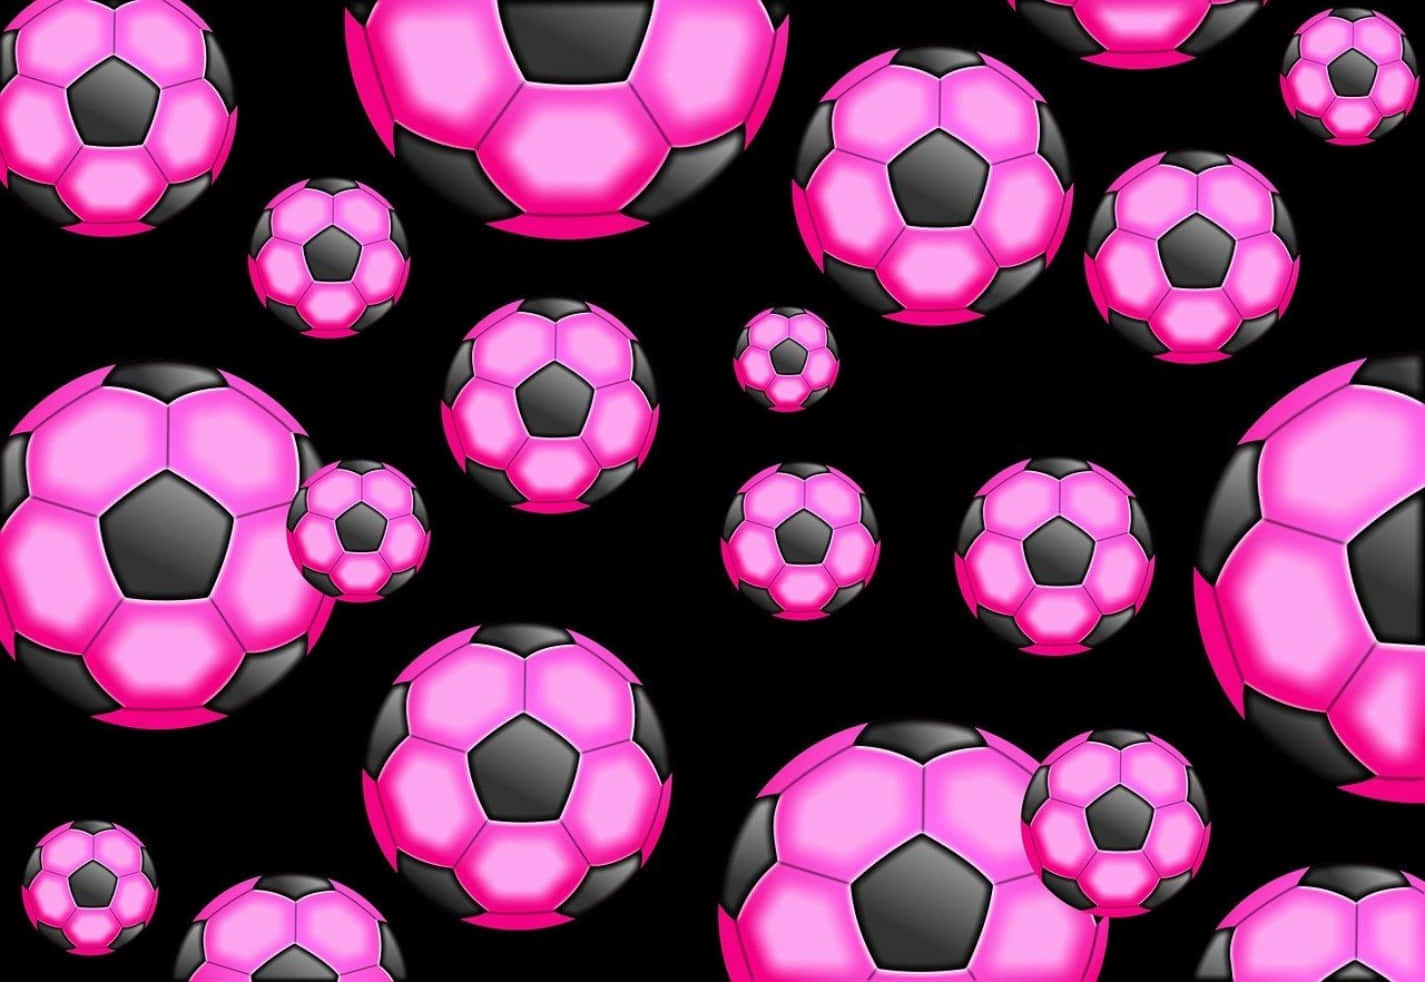 A vibrant pink soccer ball on a grass field Wallpaper